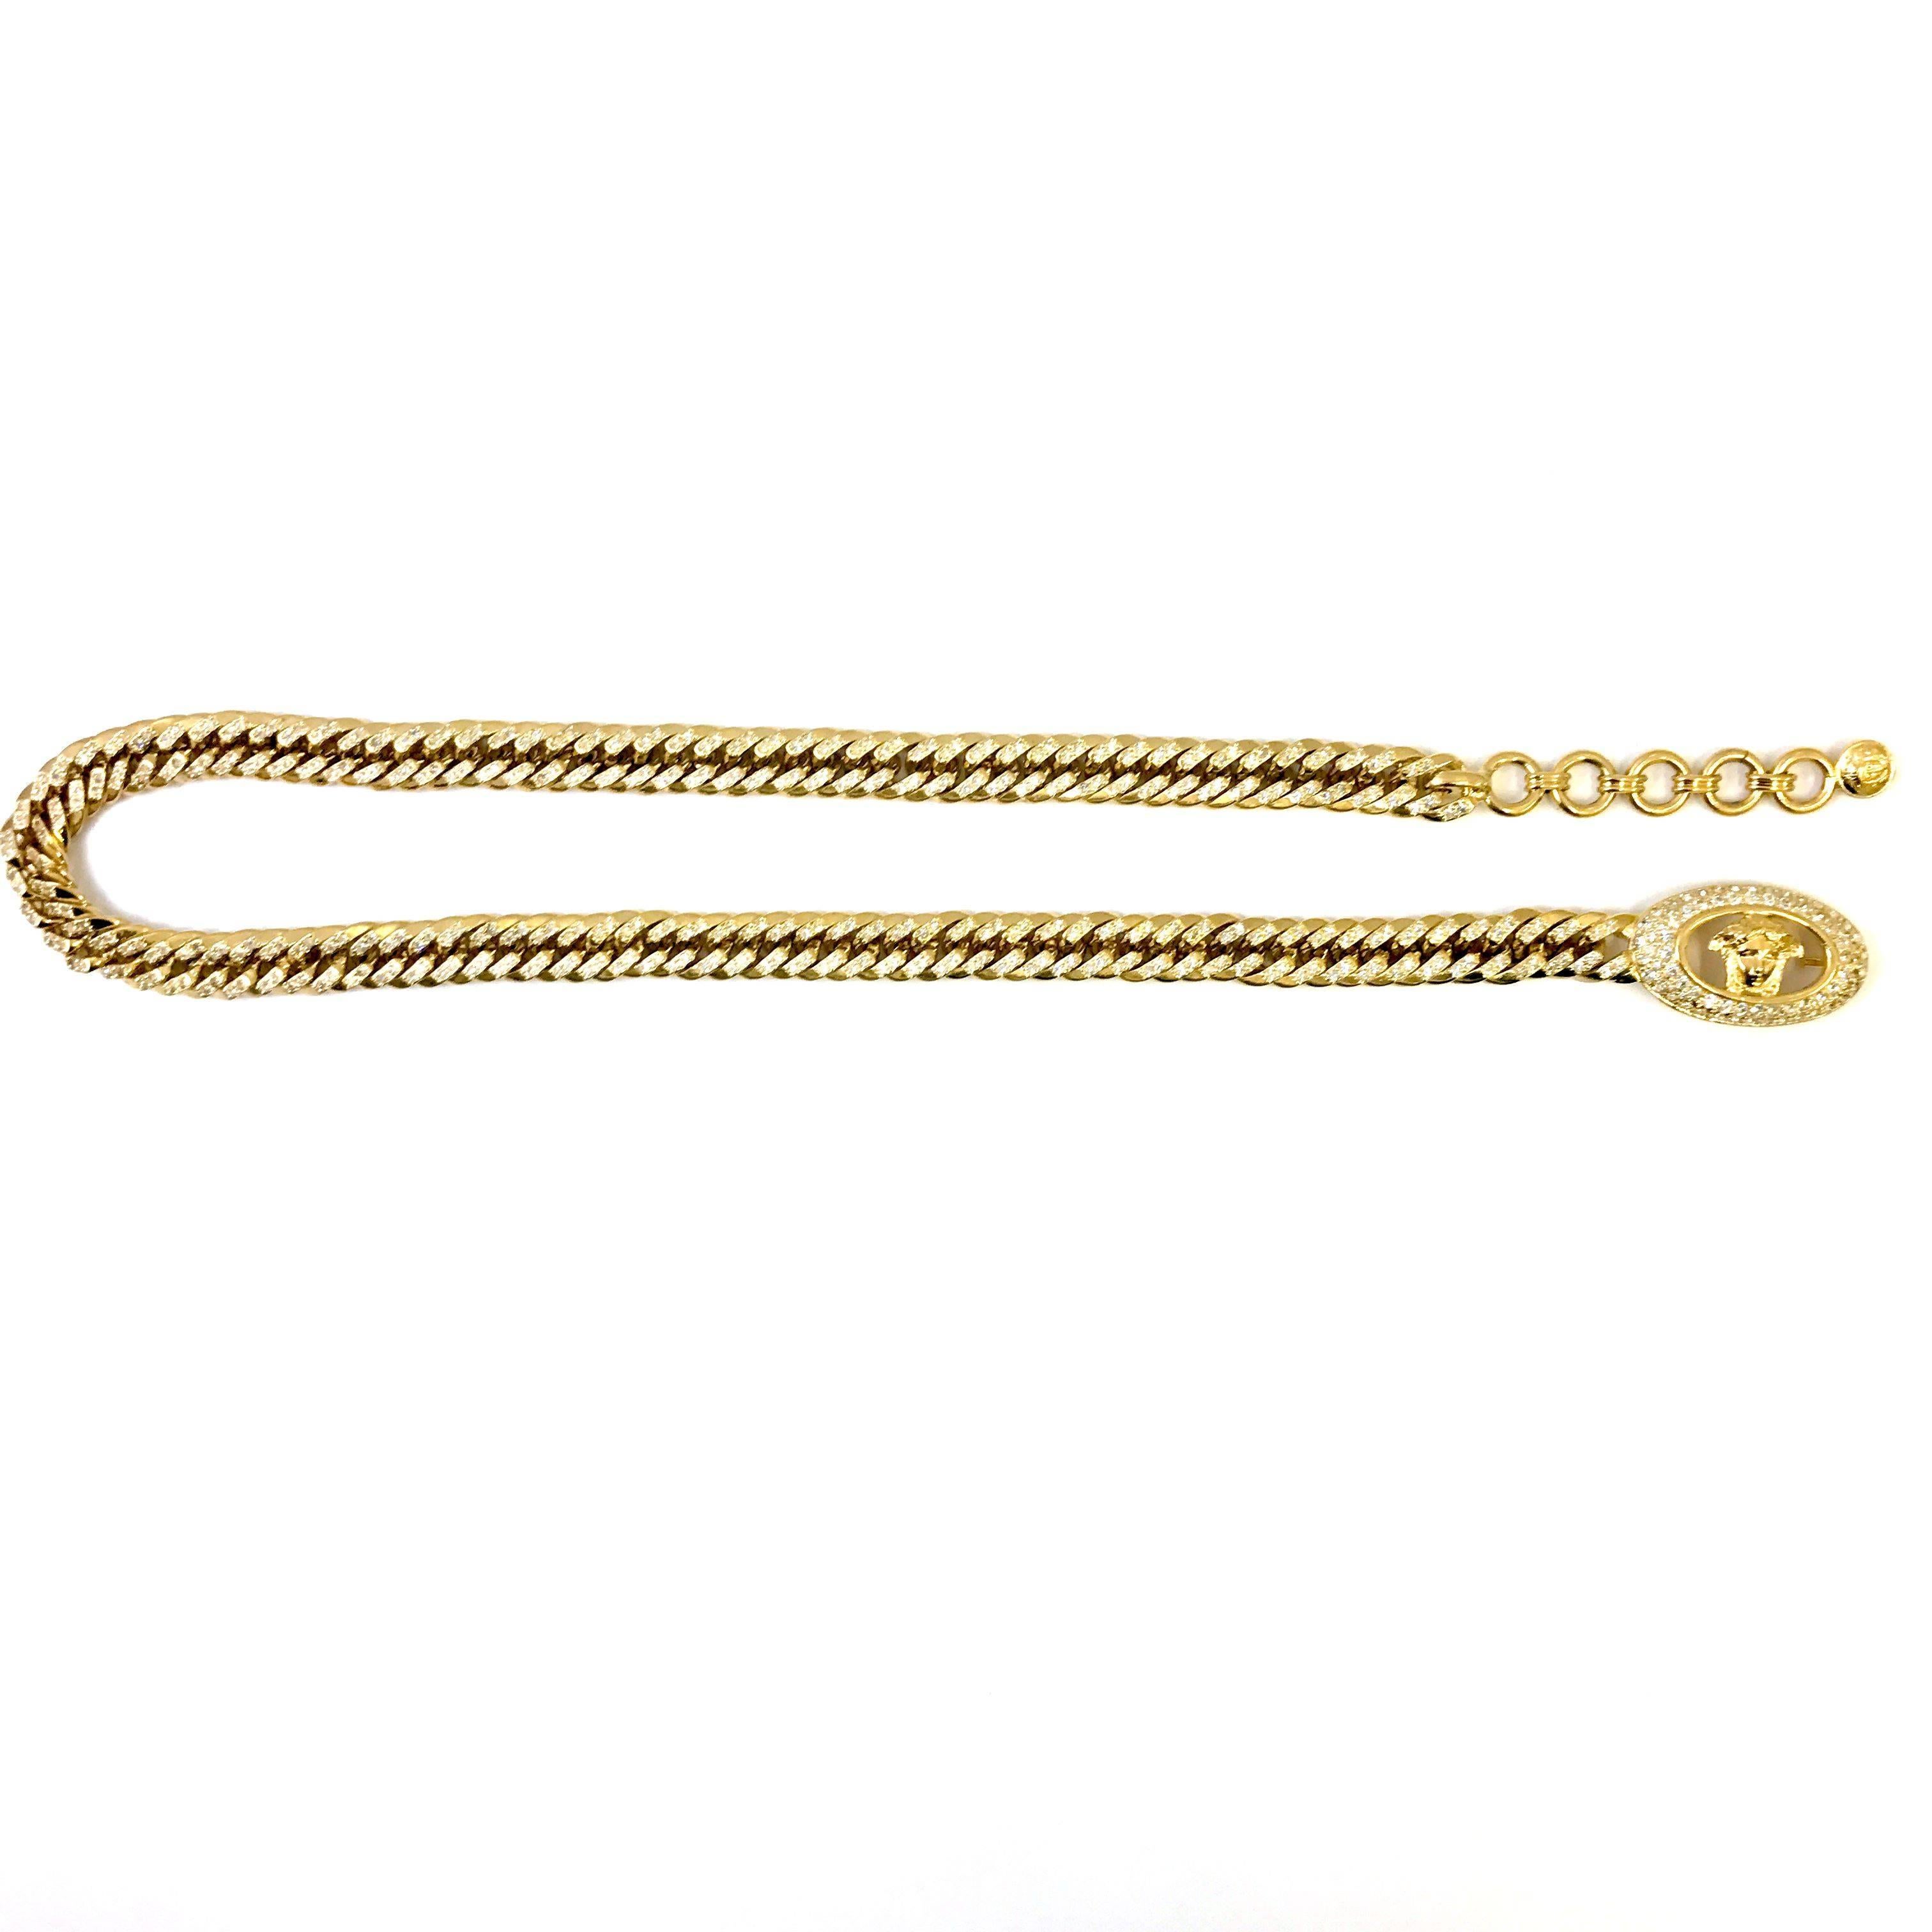 Dieser Gianni Versace Gürtel ist aus goldfarbenem, vergoldetem Metall gefertigt. Der Stil der Kette spiegelt die Ära der 90er Jahre wider, denn sie hat die Form einer Panzerkette. Die Kette des Gürtels ist mit klaren Strasssteinen besetzt, die